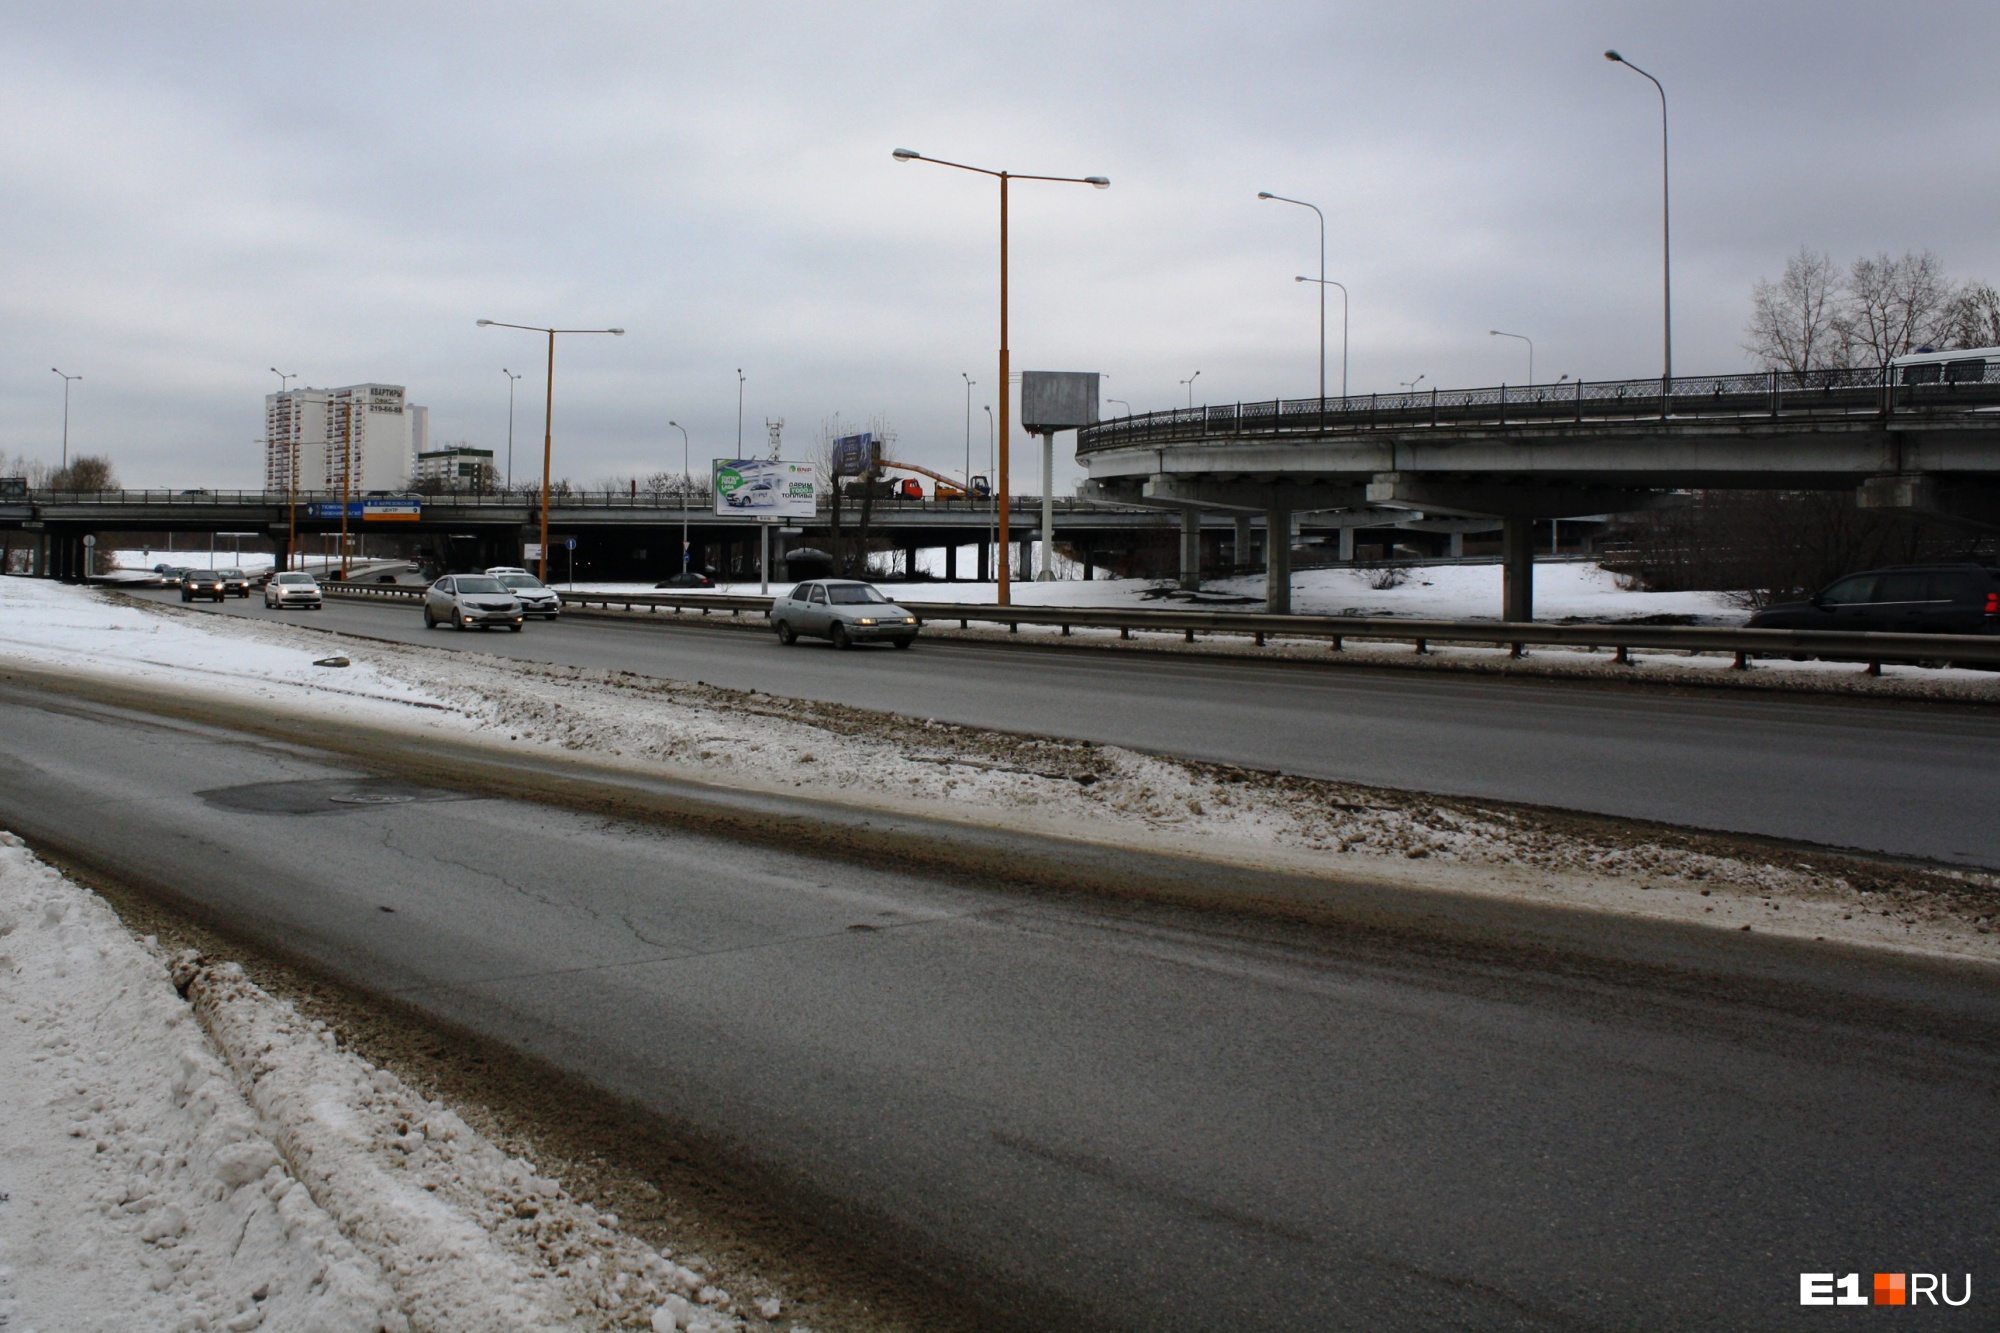 Готовьтесь к пробкам: в Екатеринбурге закроют половину моста, ведущего в центр